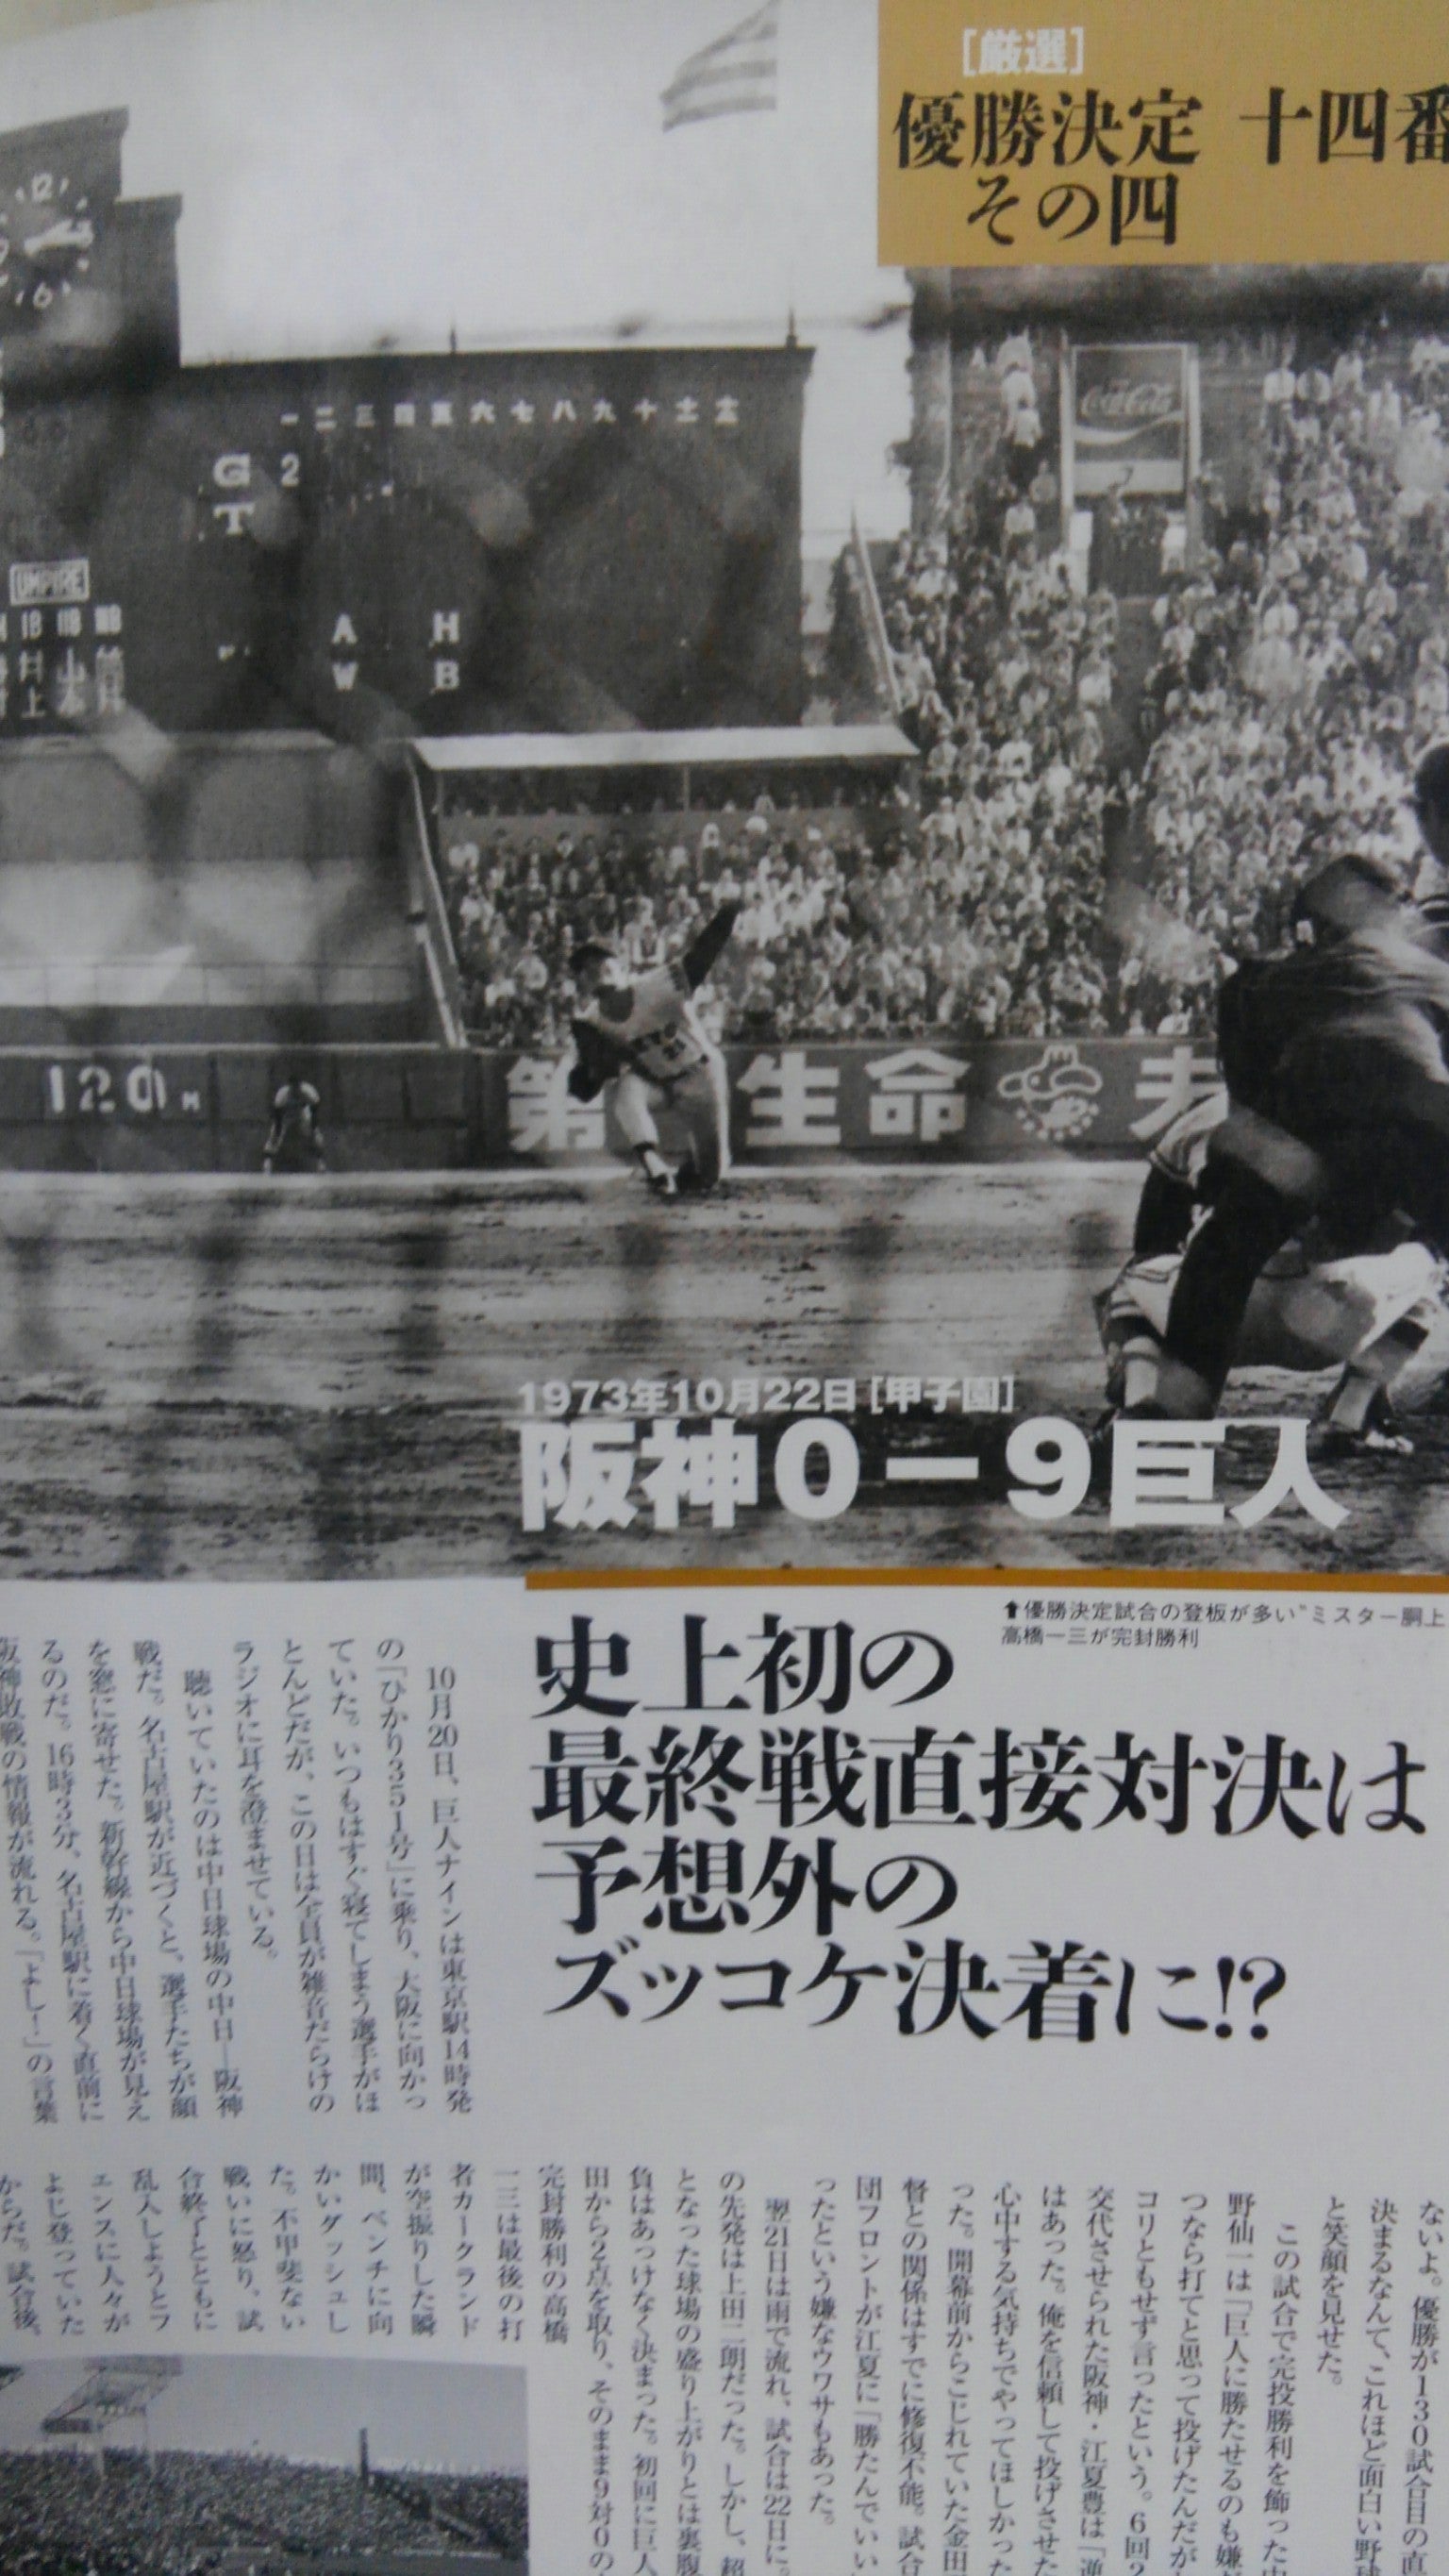 1973阪神タイガース村山引退試合半券‼️額入り。 一部予約販売中 www.m